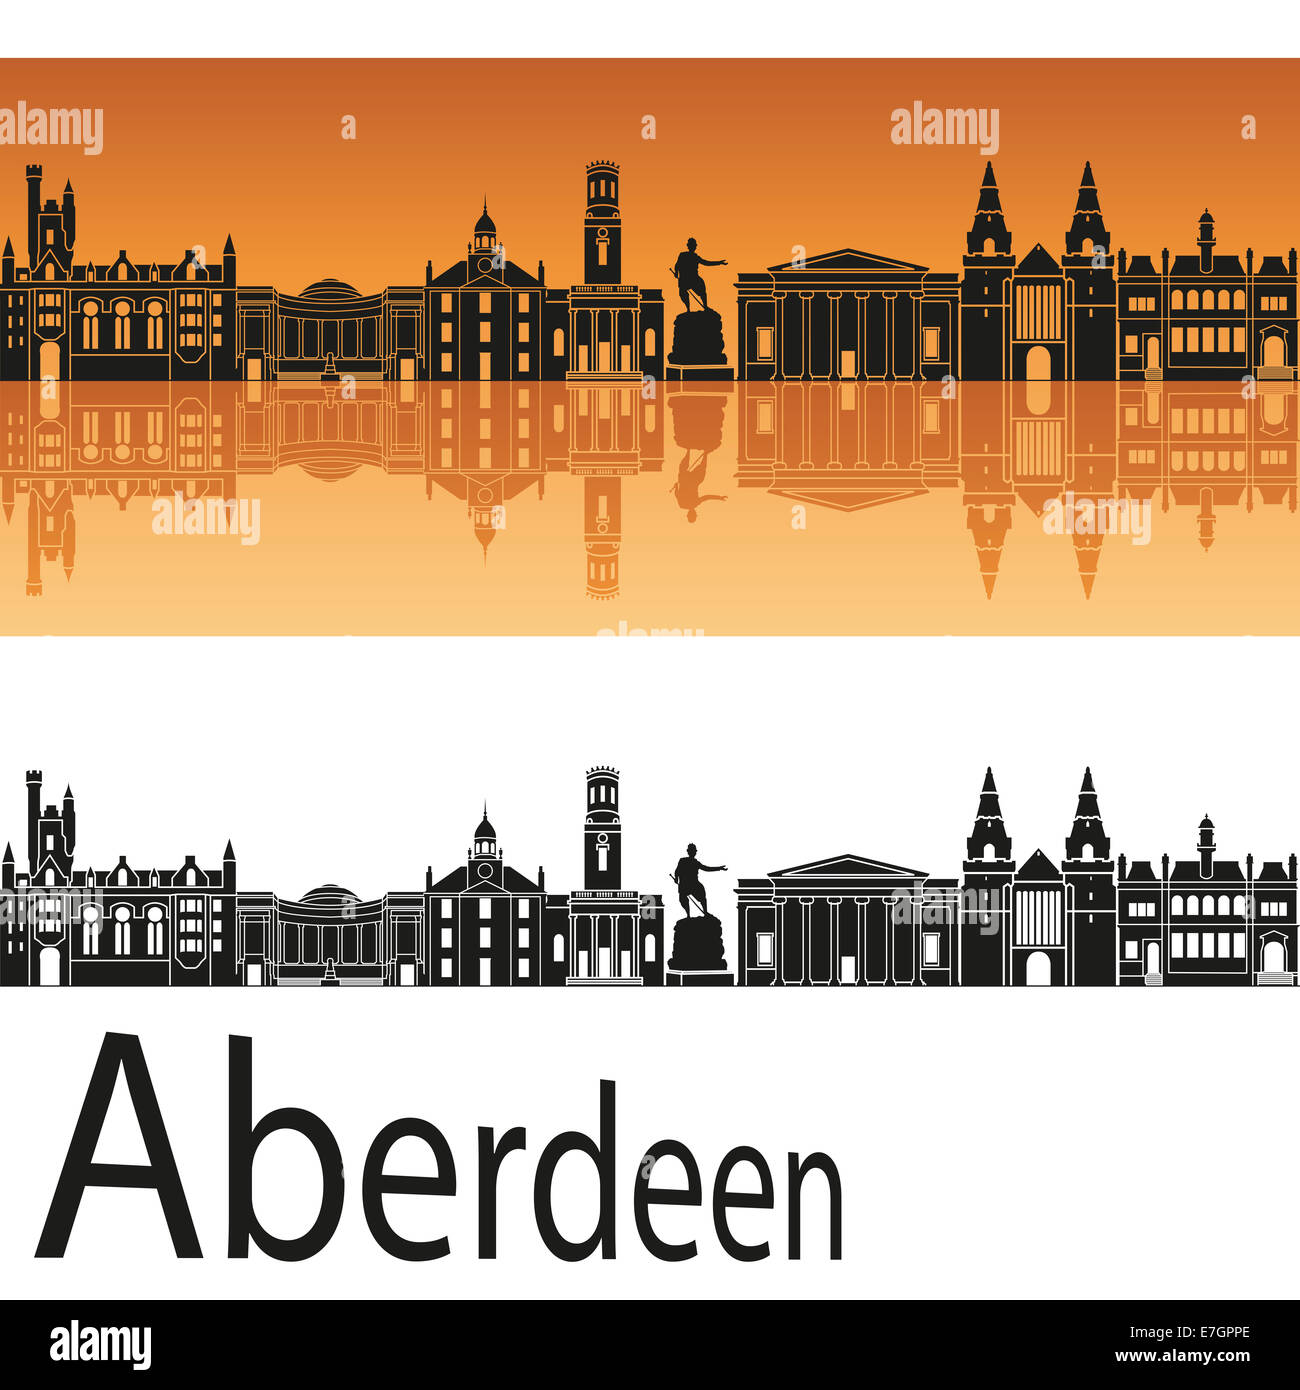 Aberdeen skyline in orange background Stock Photo